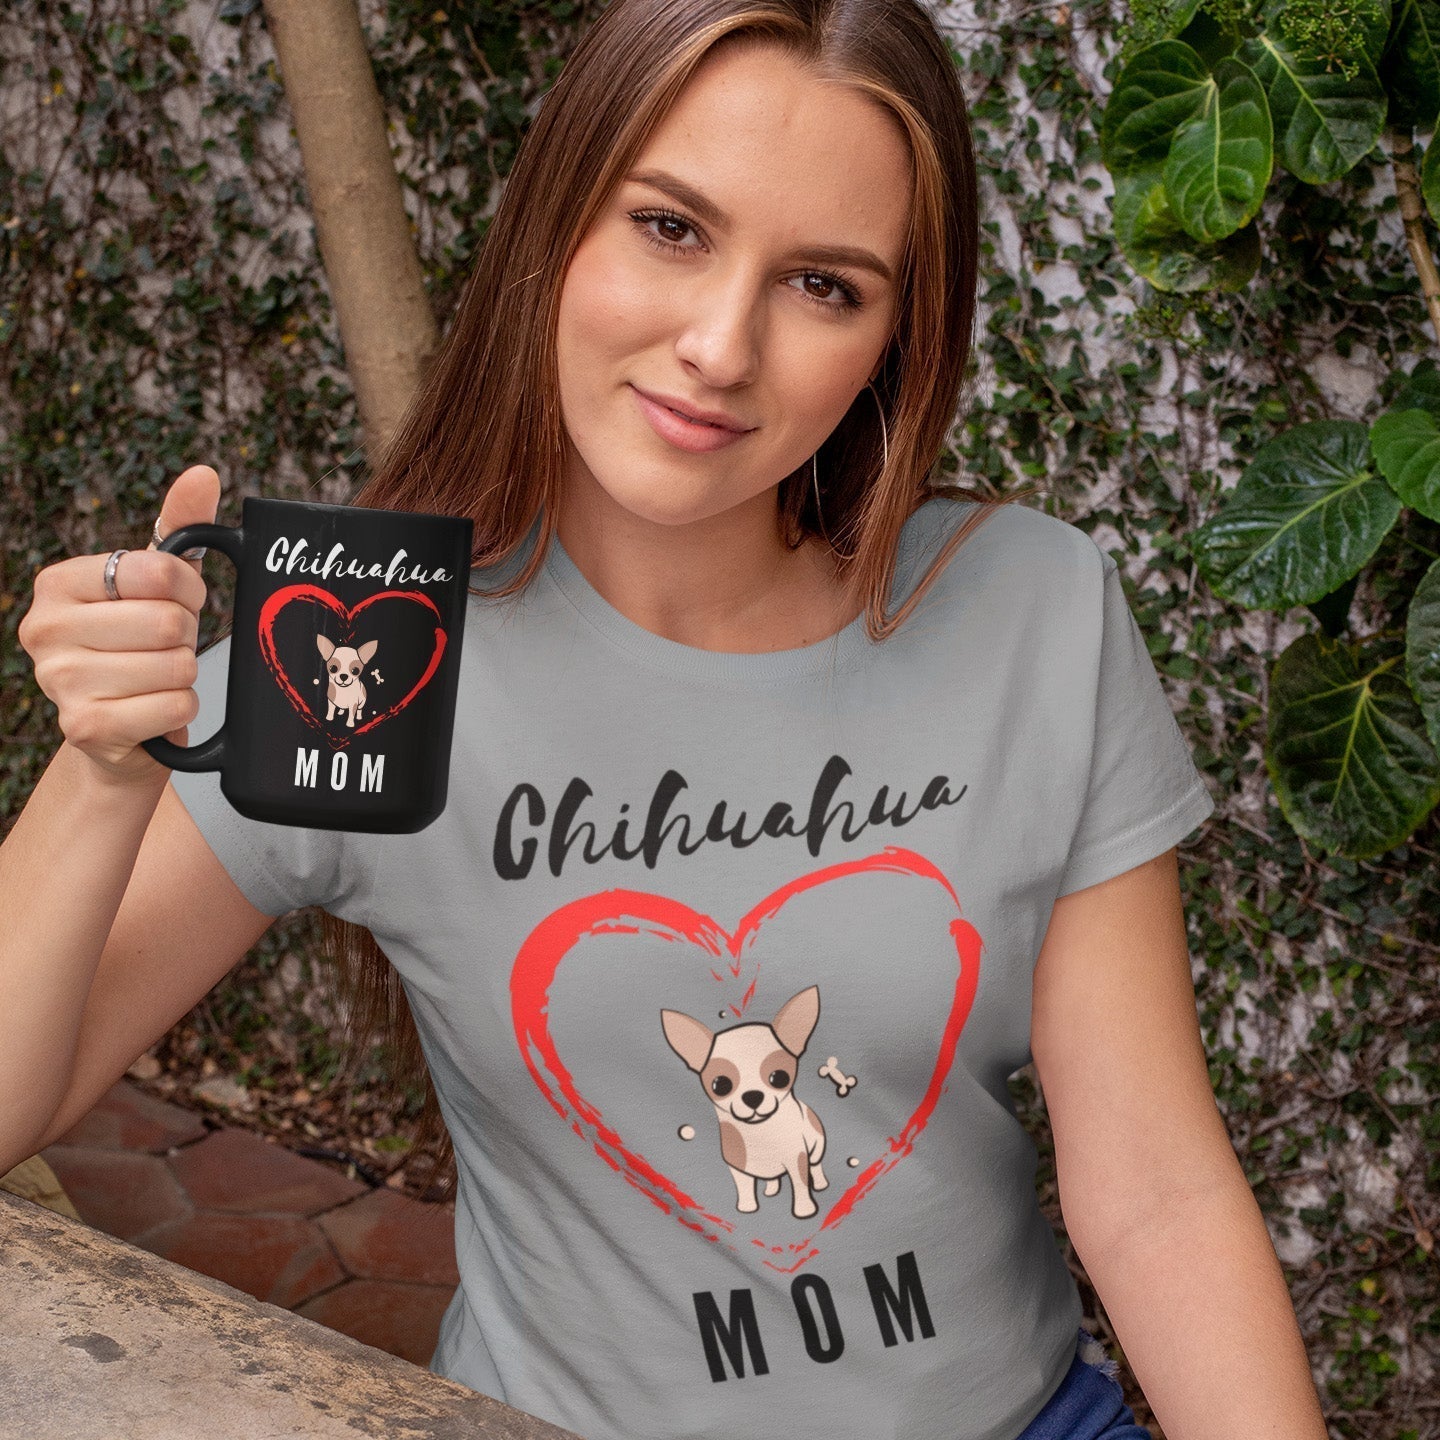 Chihuahua Mom - Black Mug - Chihuahua Treats